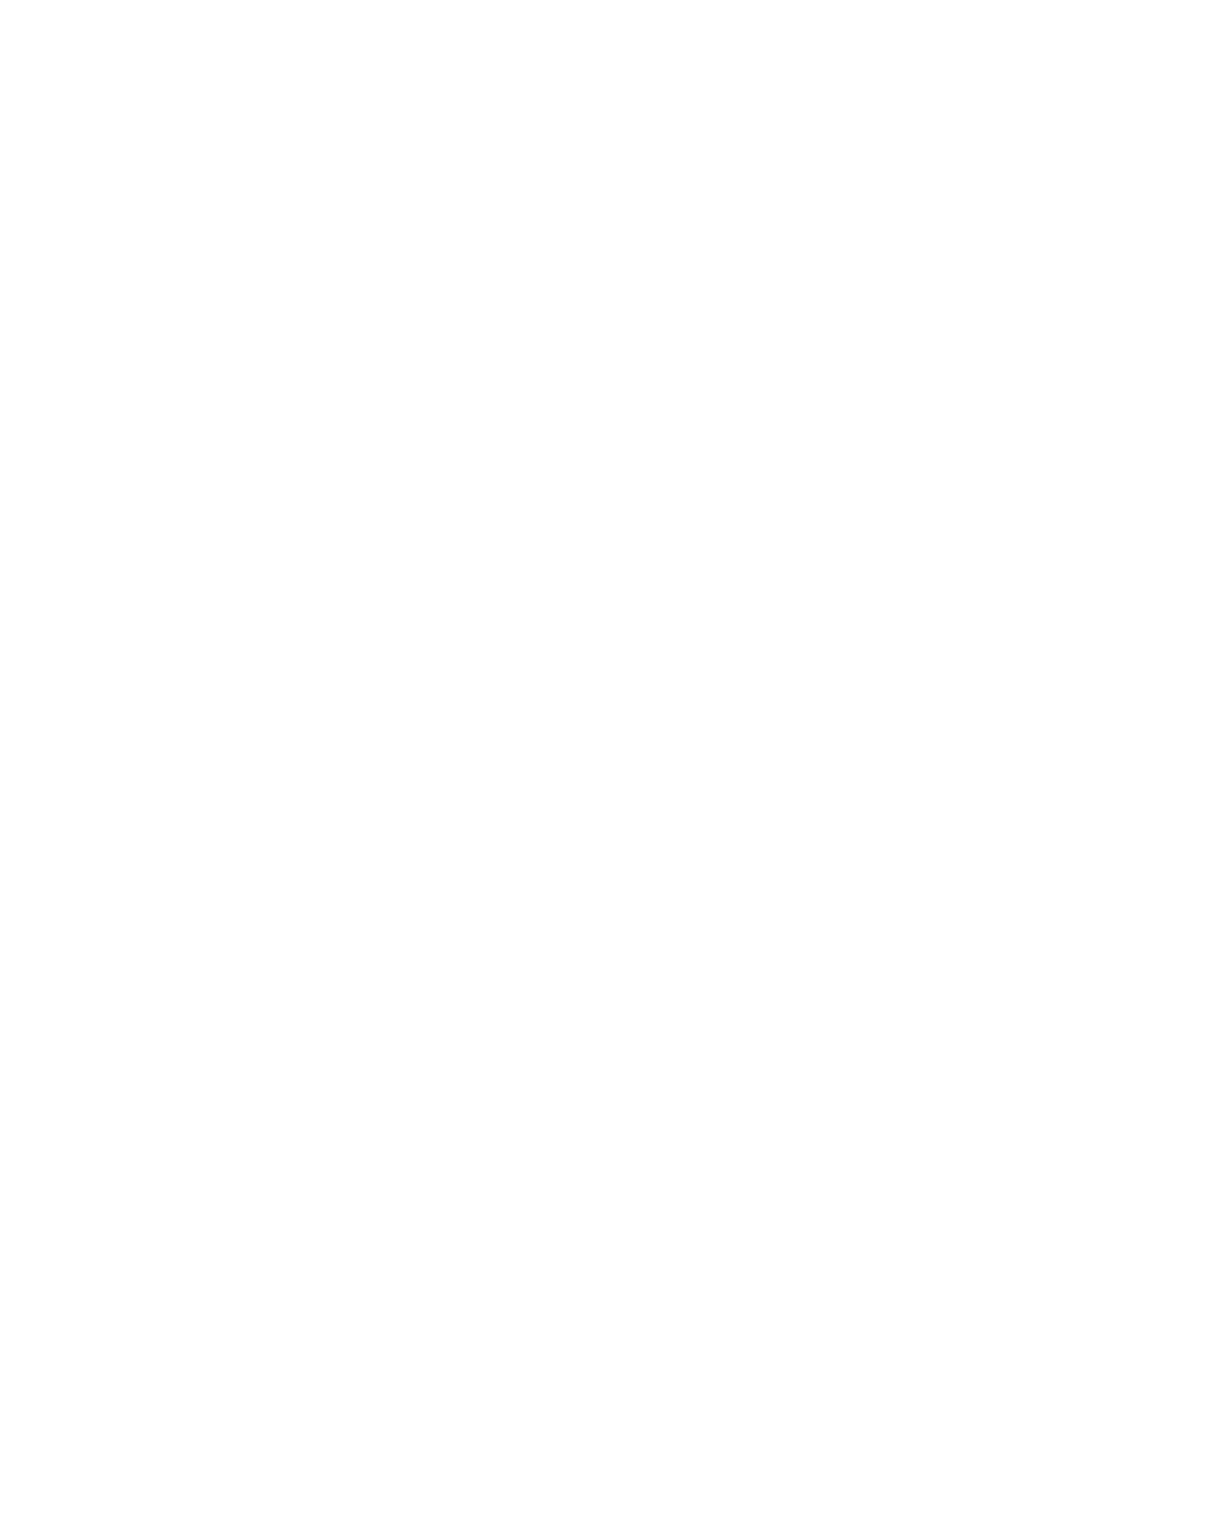 Cadiz logo large for dark backgrounds (transparent PNG)